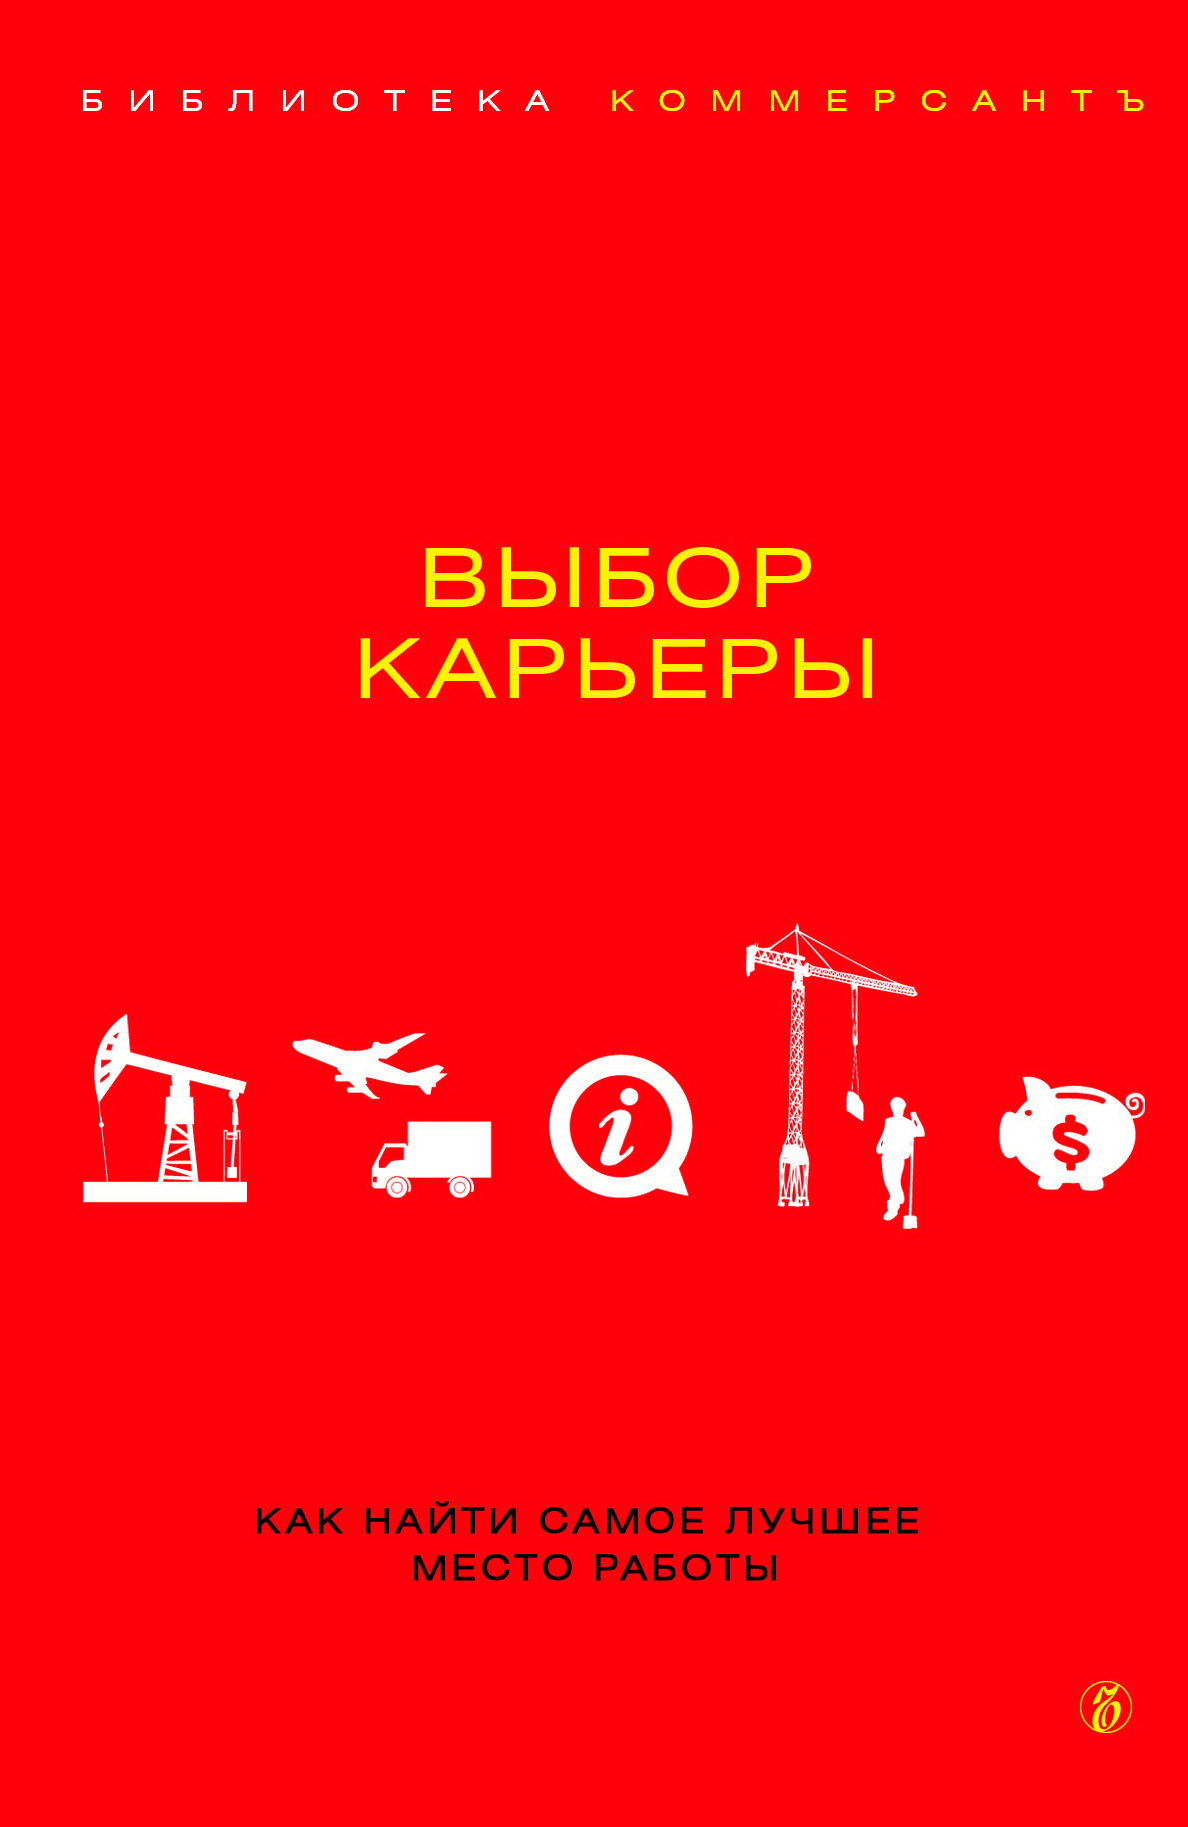 Книга  Выбор карьеры созданная Валерия Башкирова может относится к жанру поиск работы / карьера, просто о бизнесе. Стоимость электронной книги Выбор карьеры с идентификатором 5003043 составляет 109.90 руб.